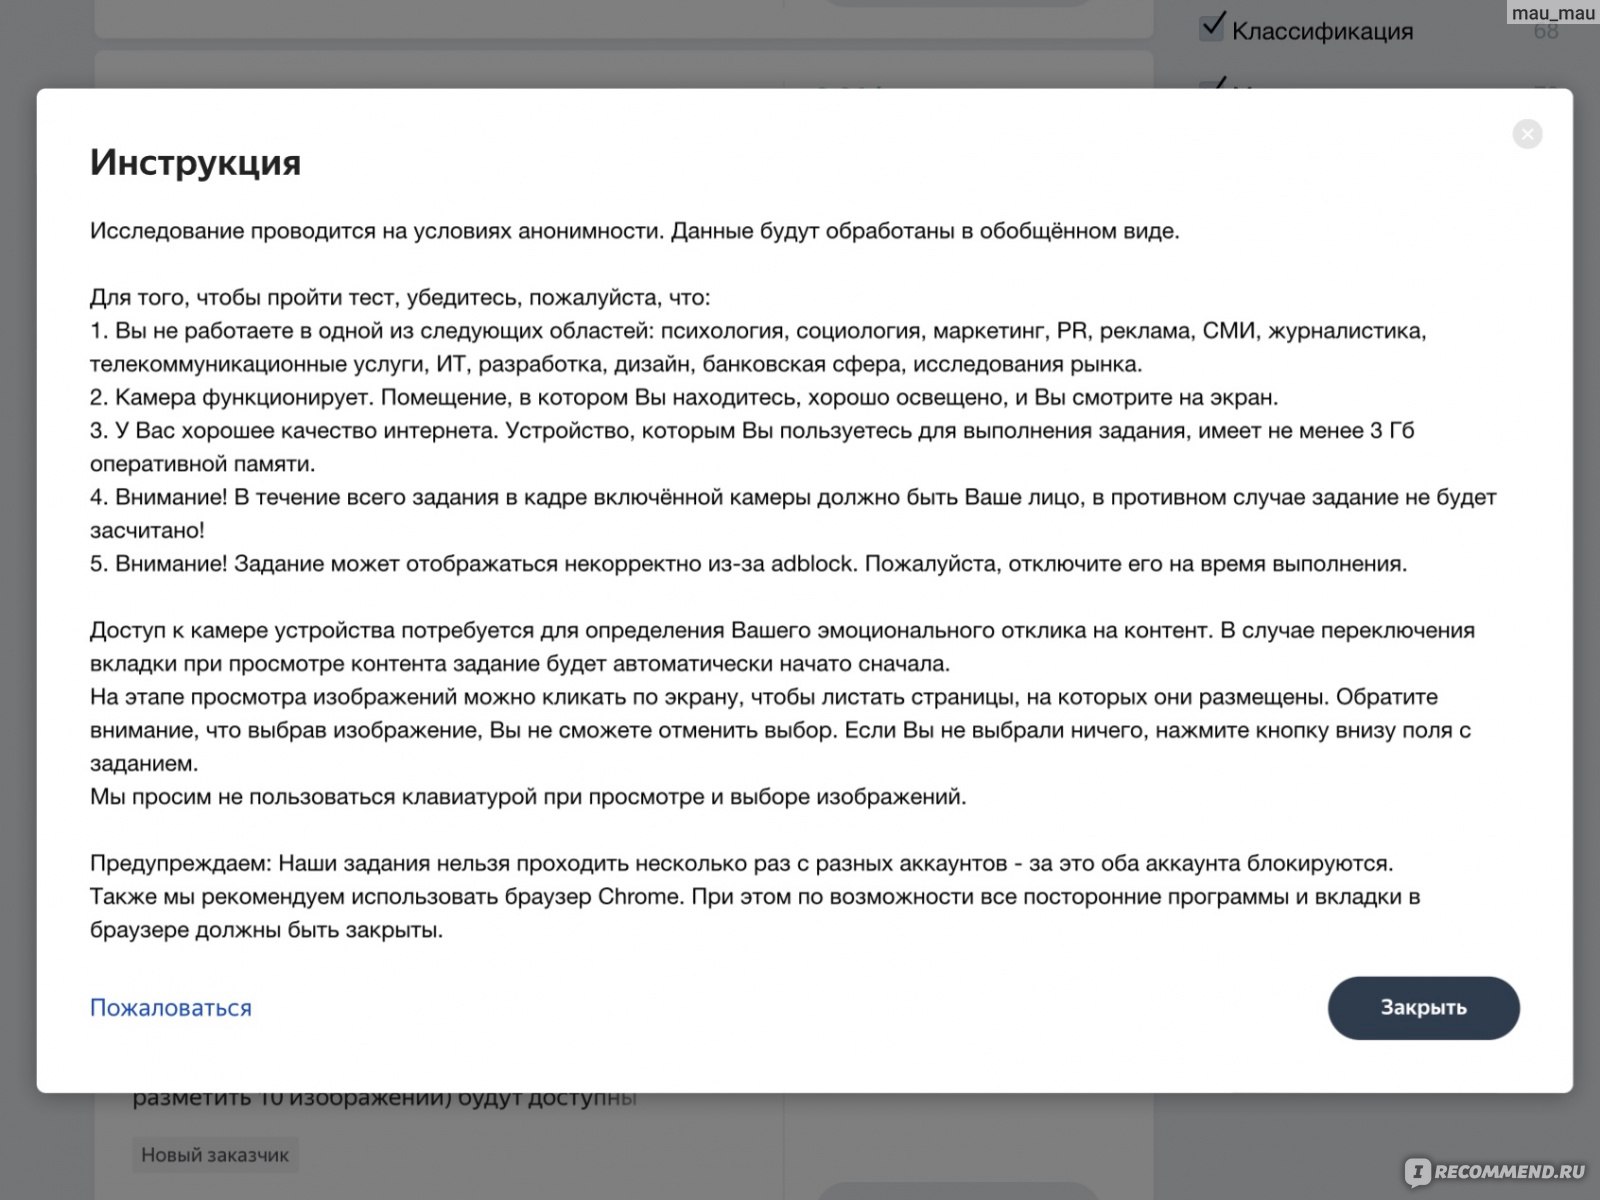 Заработок в телеграмме без вложений с выводом денег на русском карту сбербанка фото 112